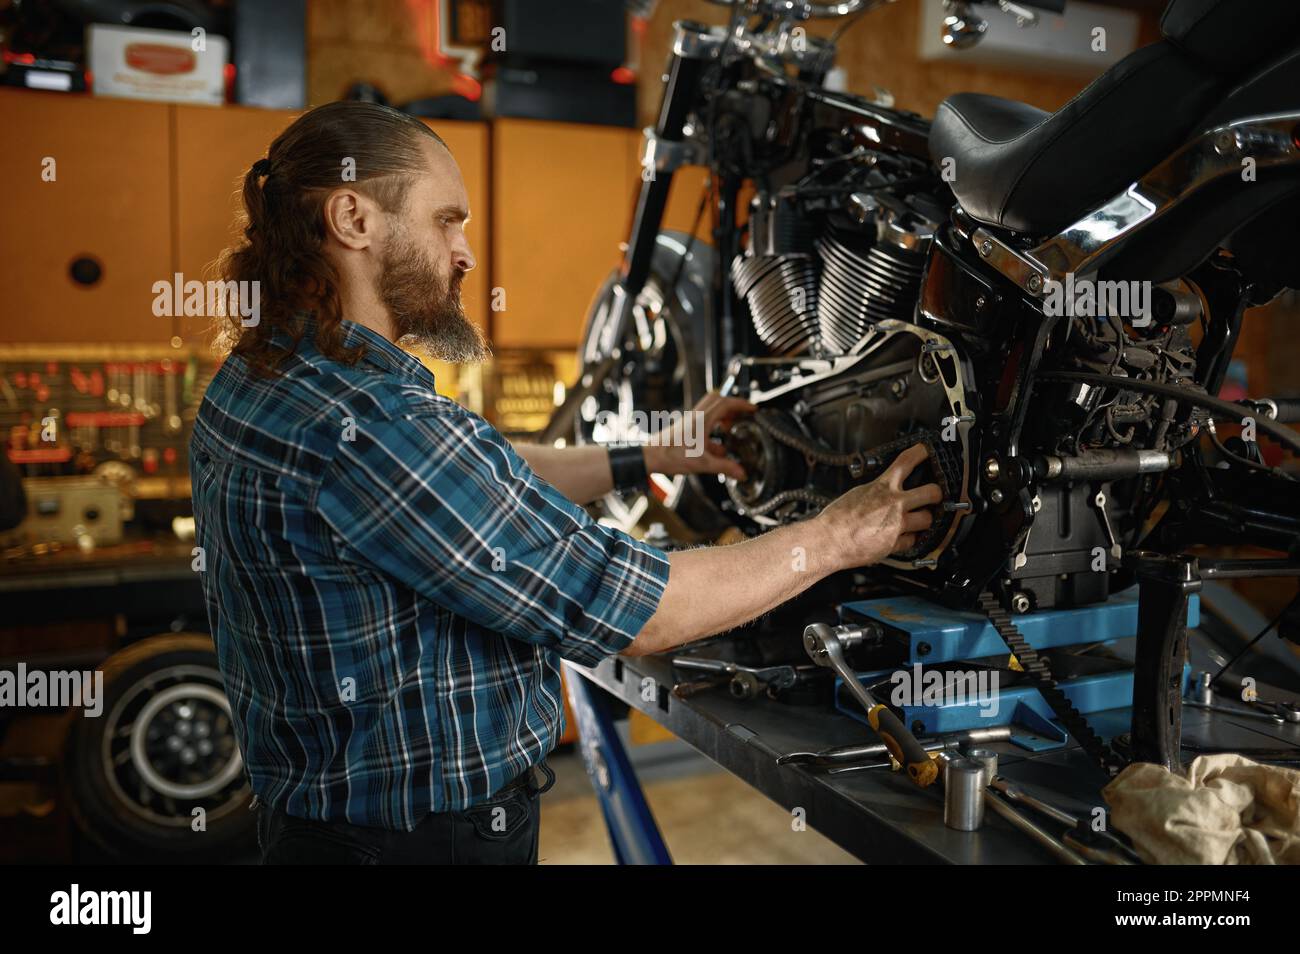 Homme mécanicien de réparer le moteur de moto travaillant dans un atelier de garage Banque D'Images